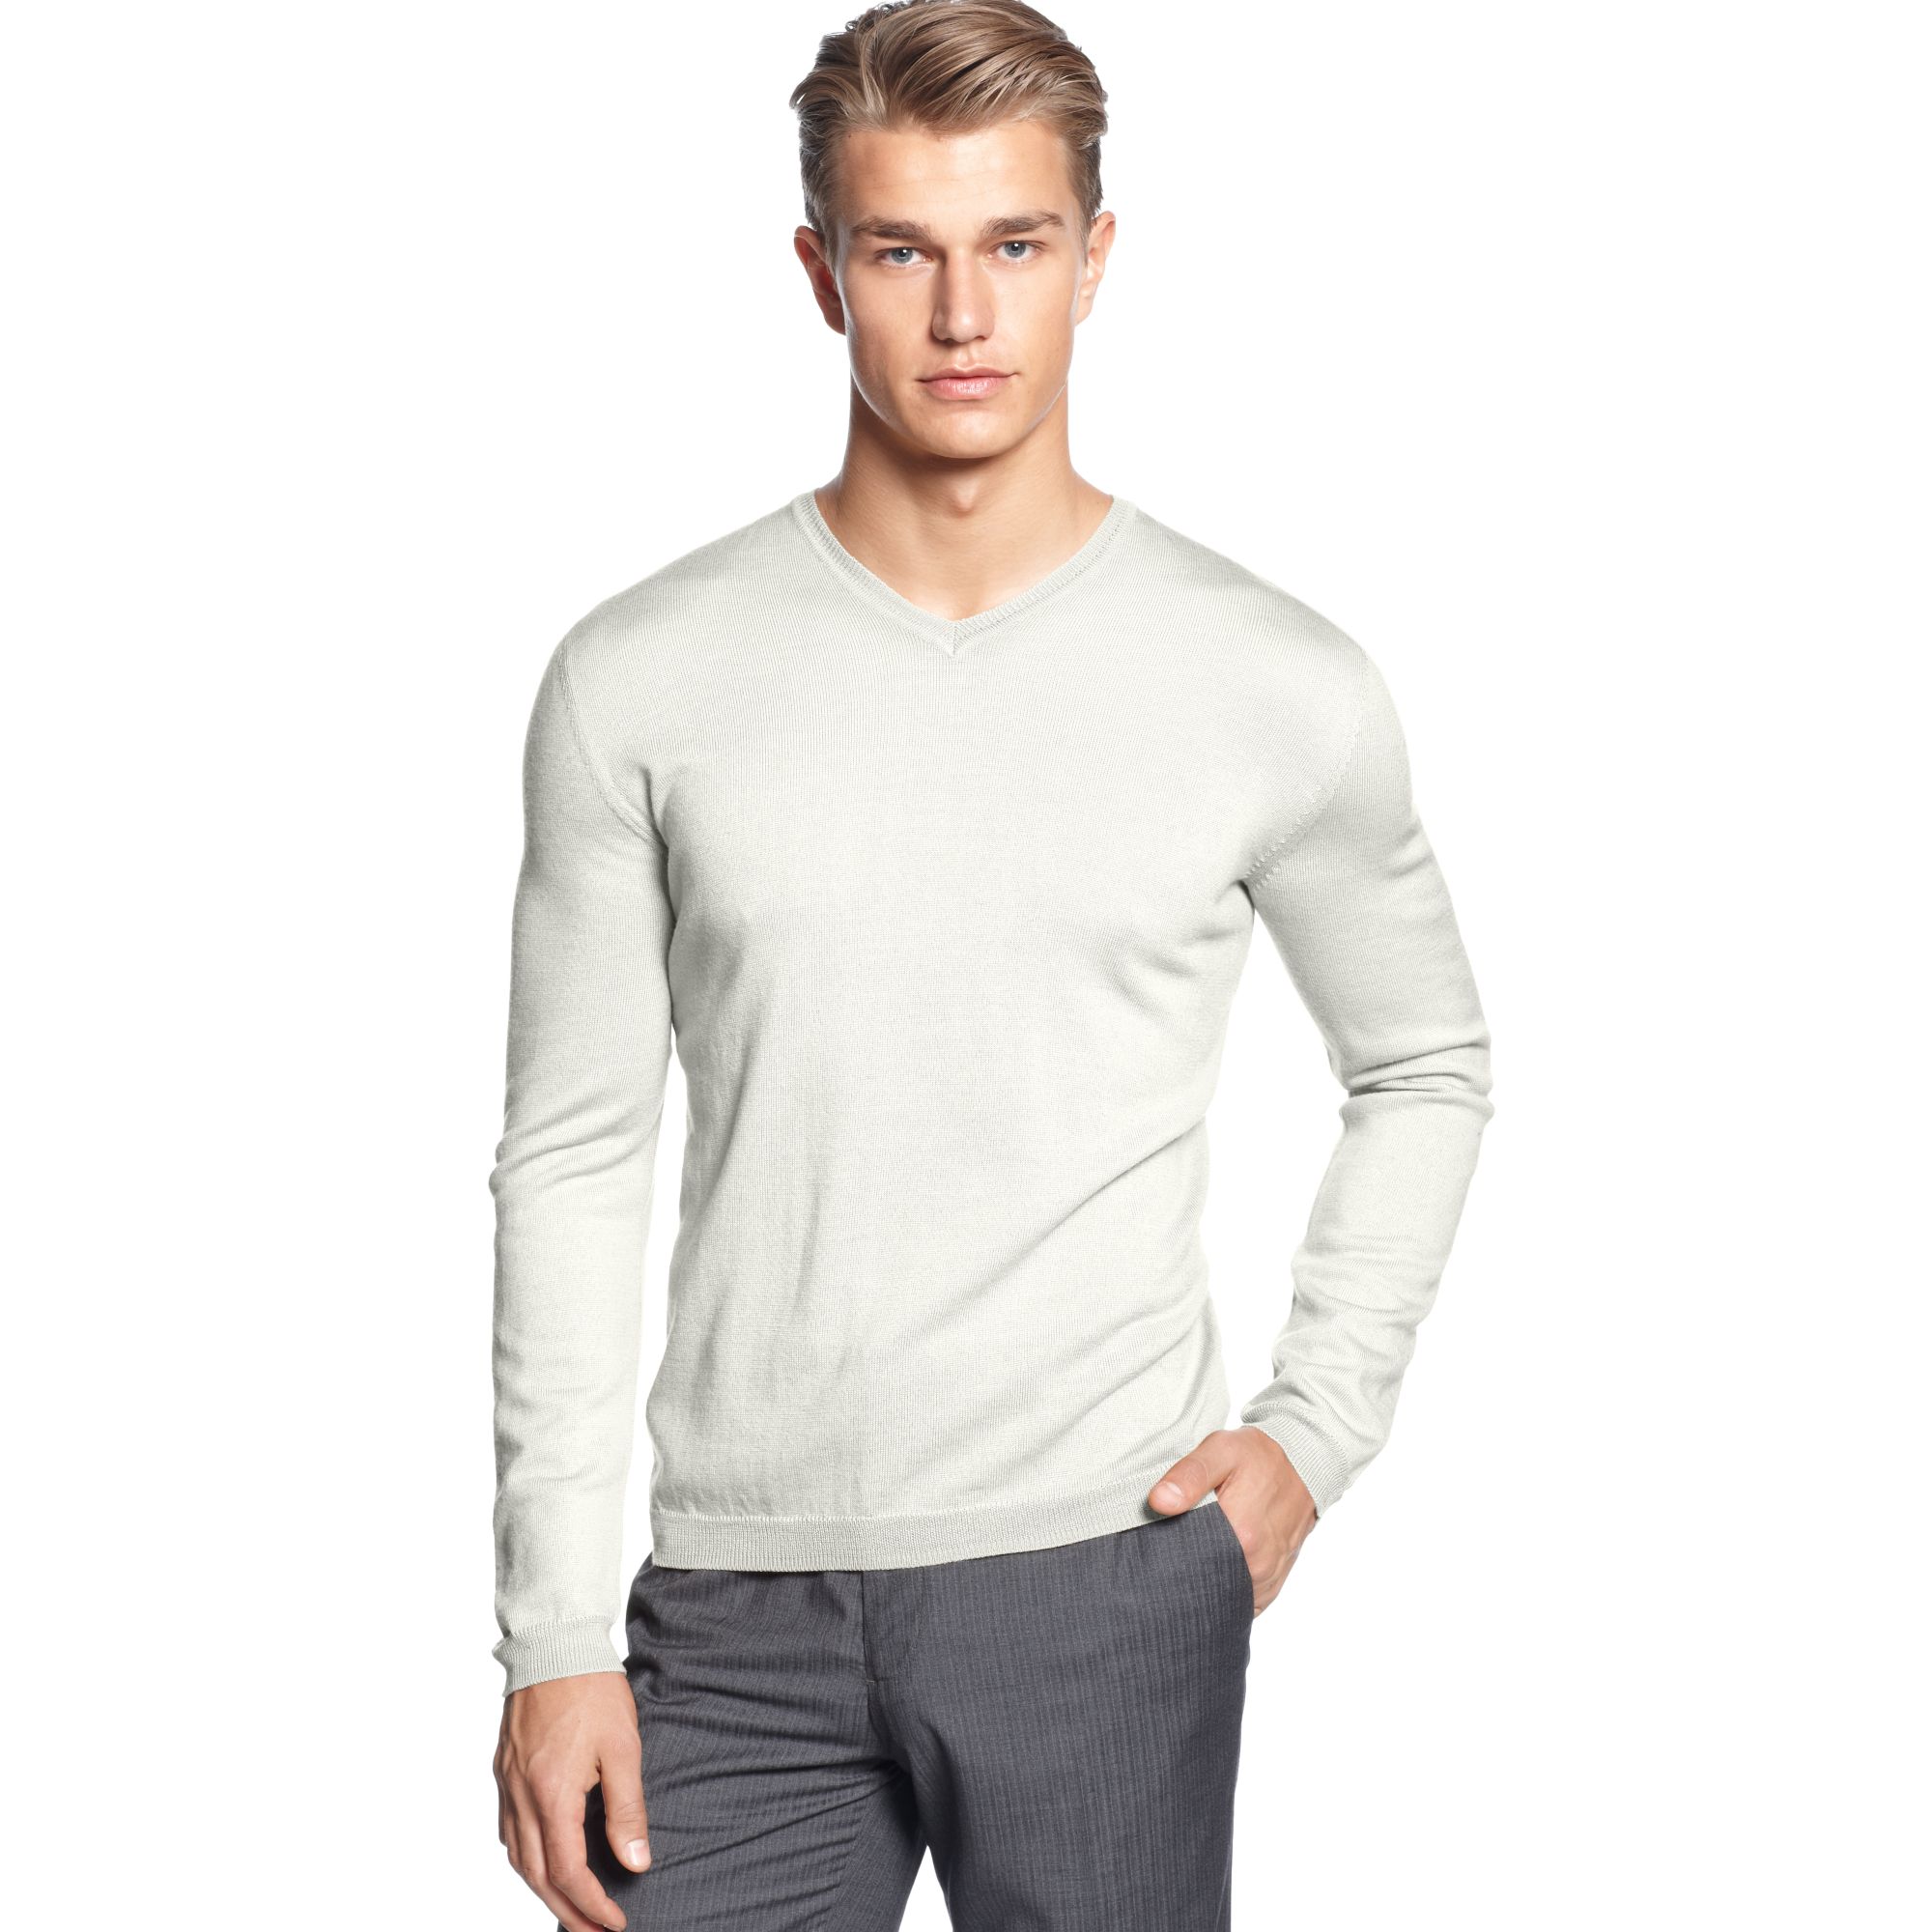 Lyst - Calvin klein Solid Merino Vneck Sweater in White for Men